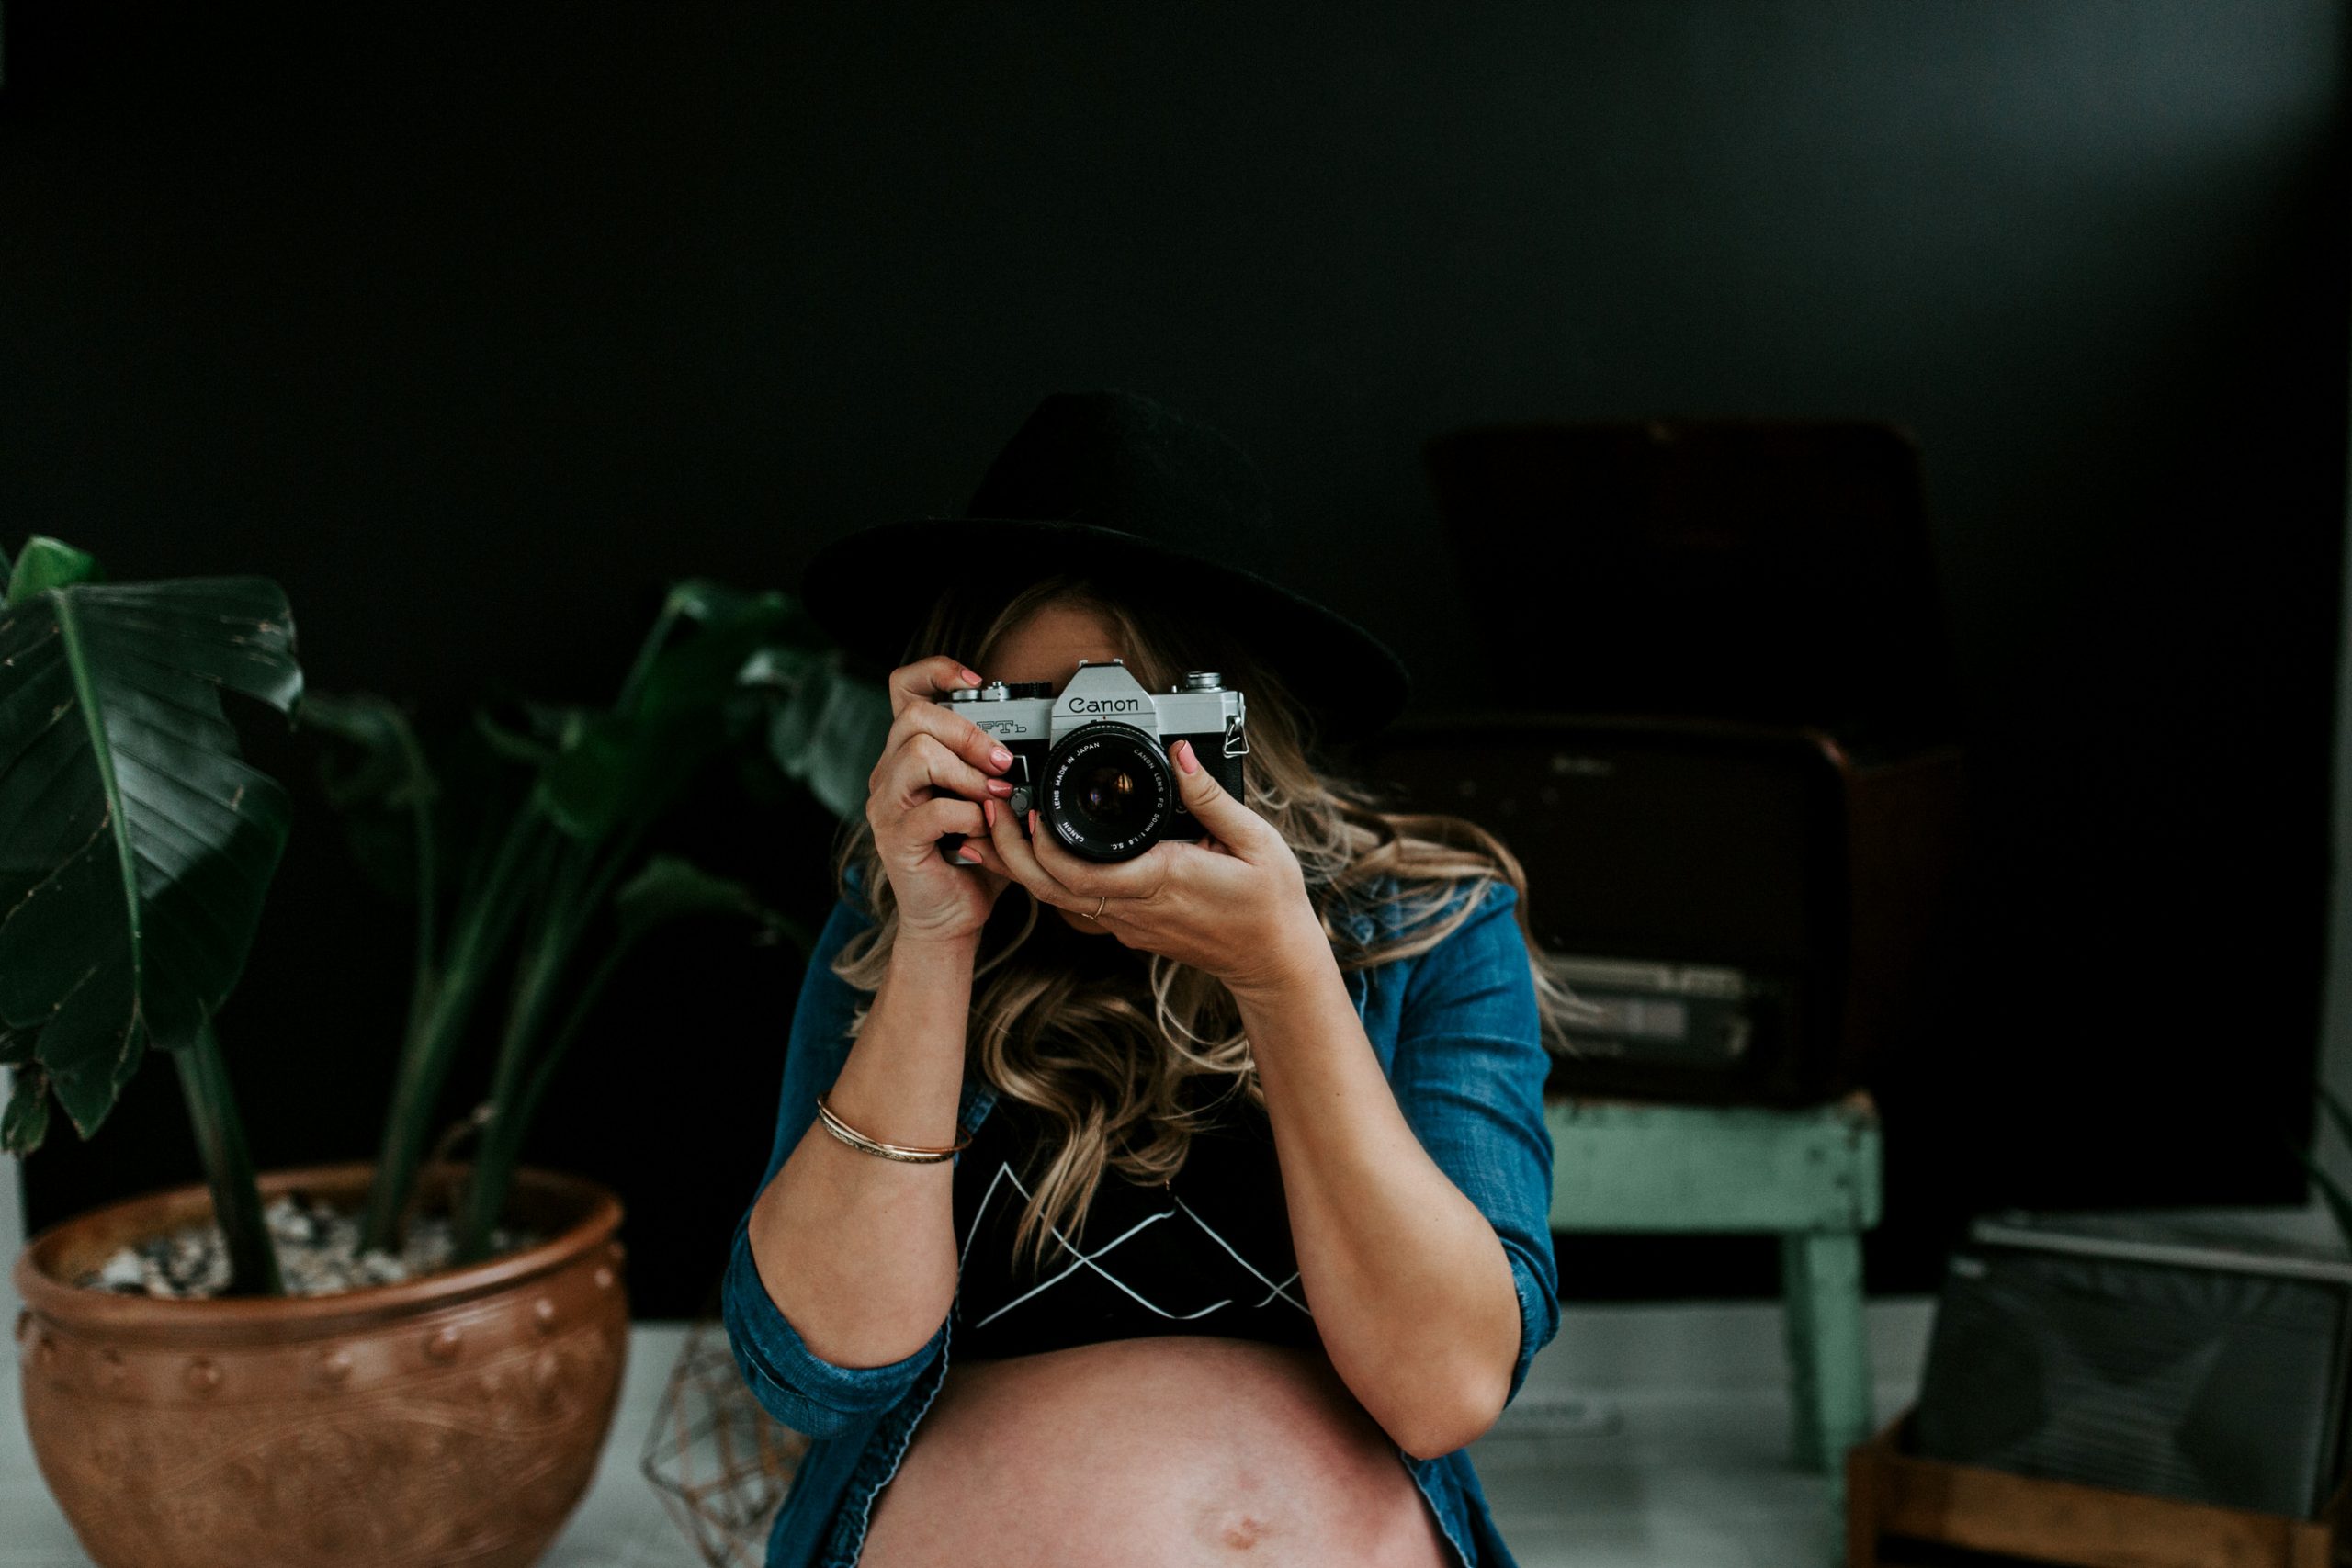 Boho maternity session edmonton photographer 